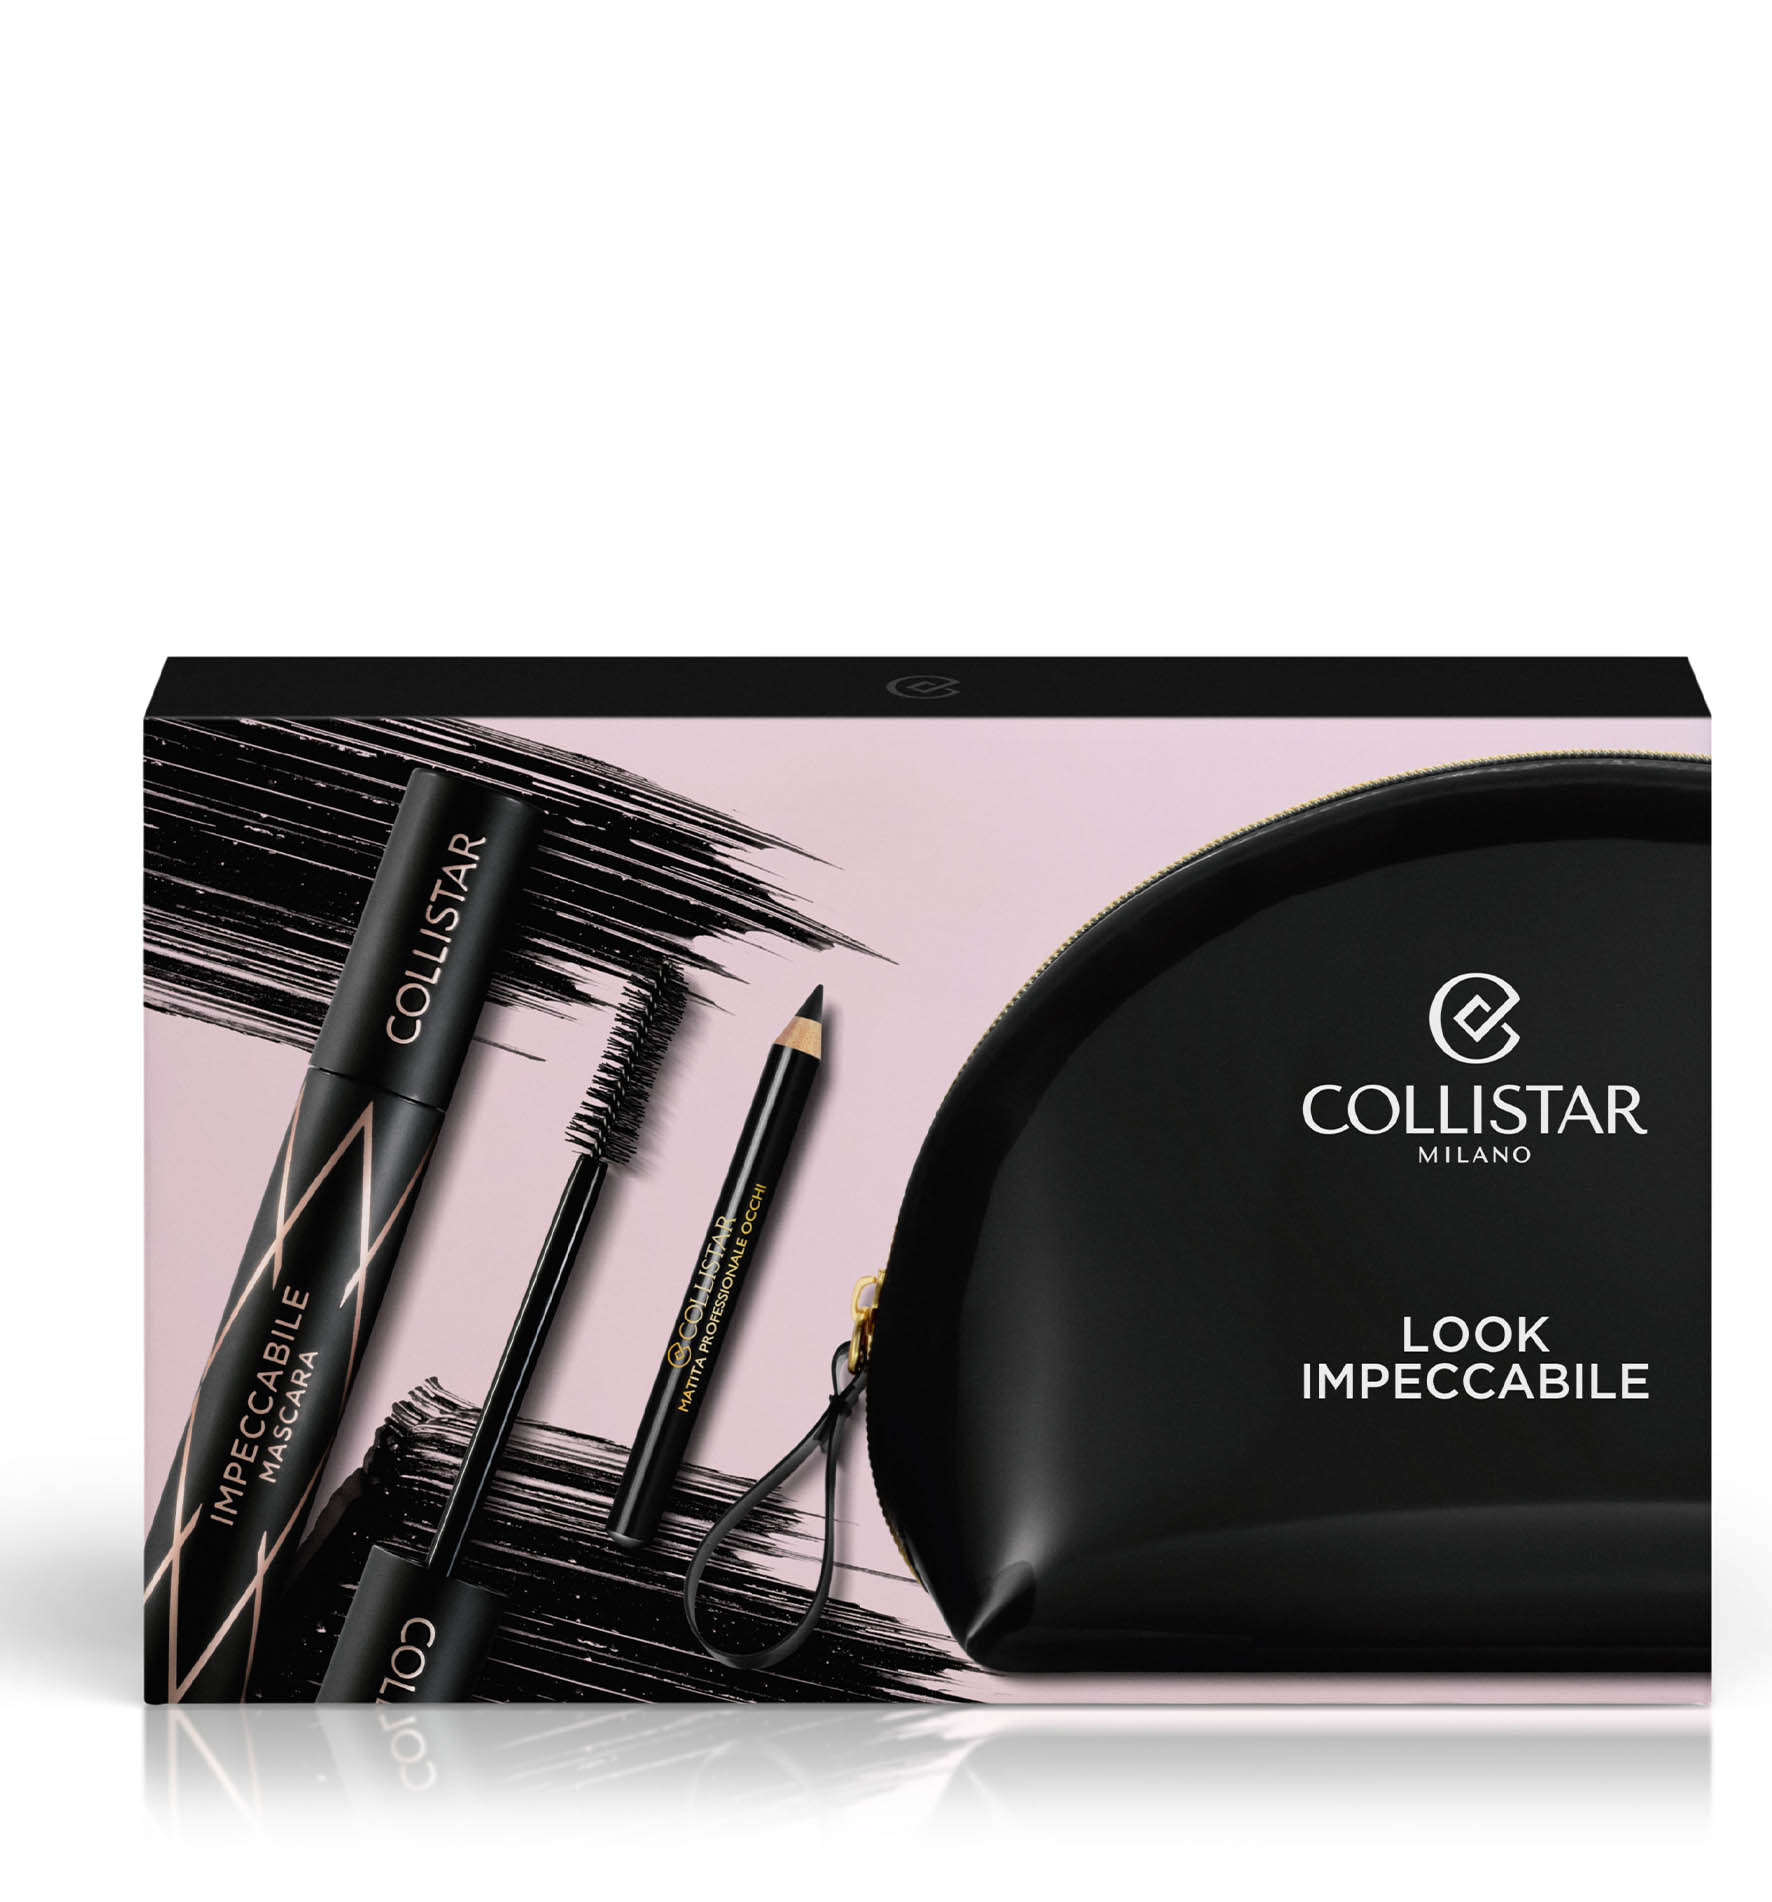 COFANETTO LOOK IMPECCABILE - Make Up | Collistar - Shop Online Ufficiale